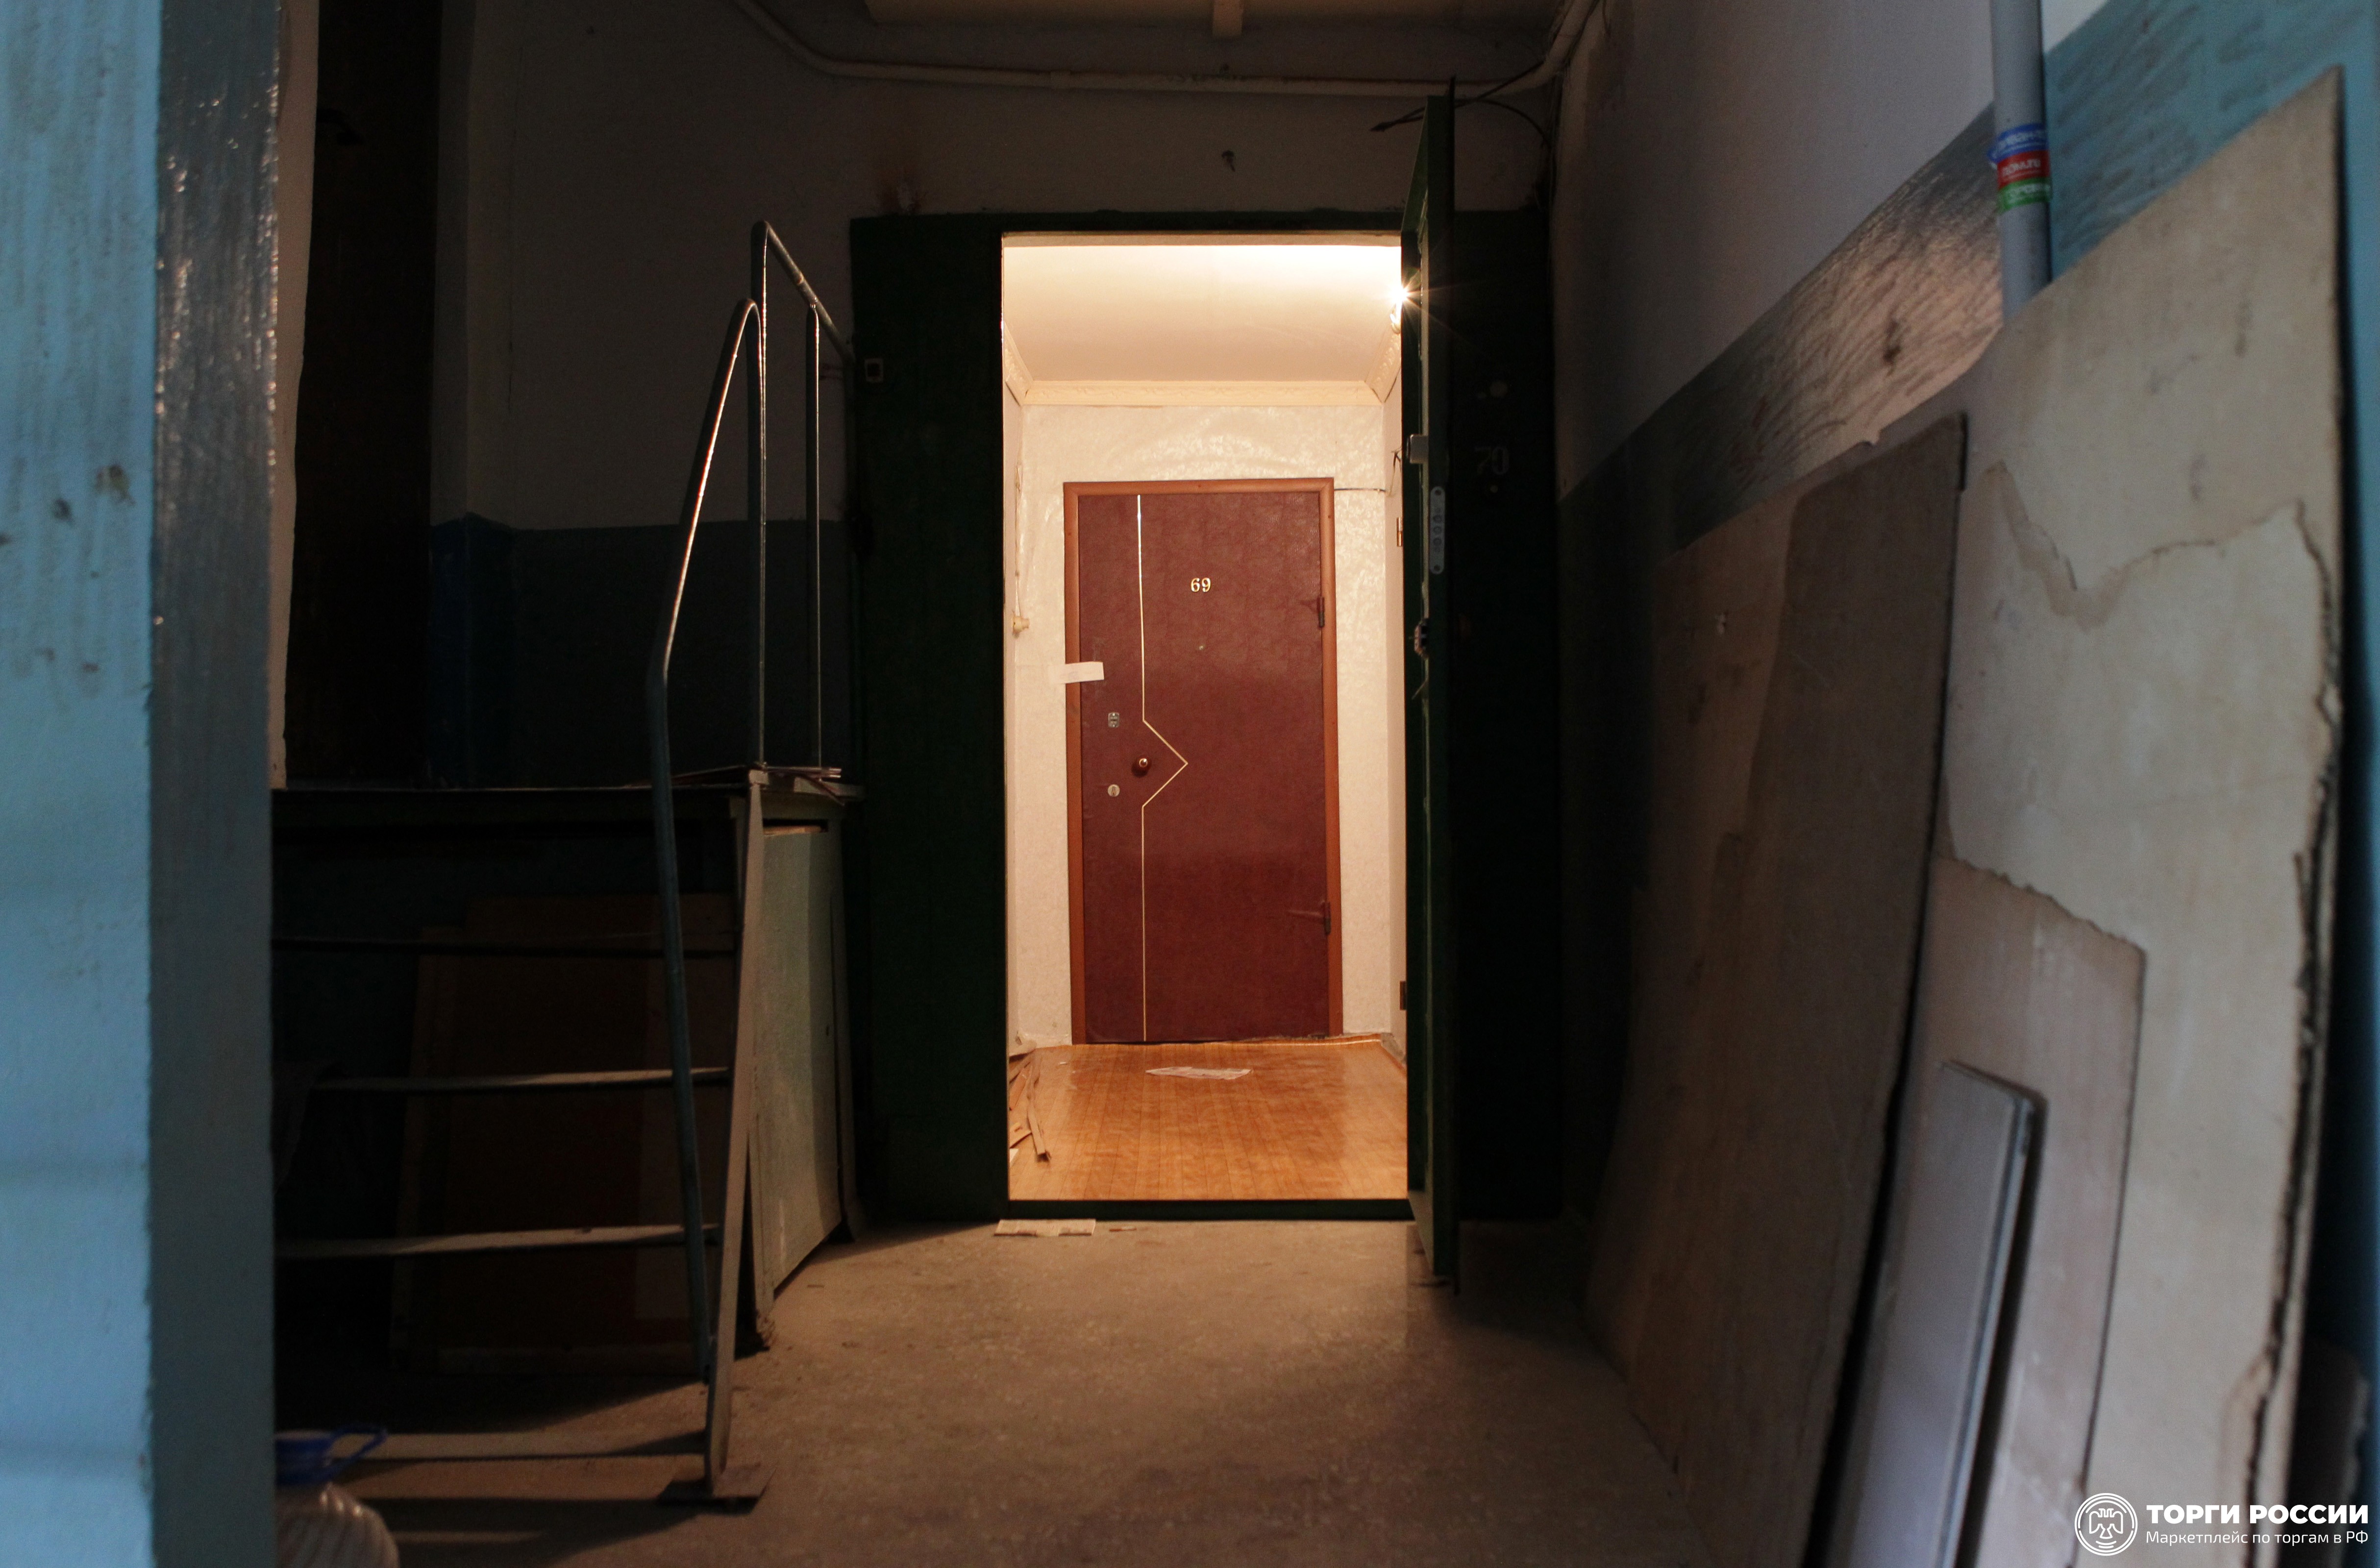 Подъездная дверь открыта. Дверь в квартиру из подъезда. Открытая дверь в квартиру. Открытая дверь в подъезде. Открытая дверь в квартиру в подъезде.